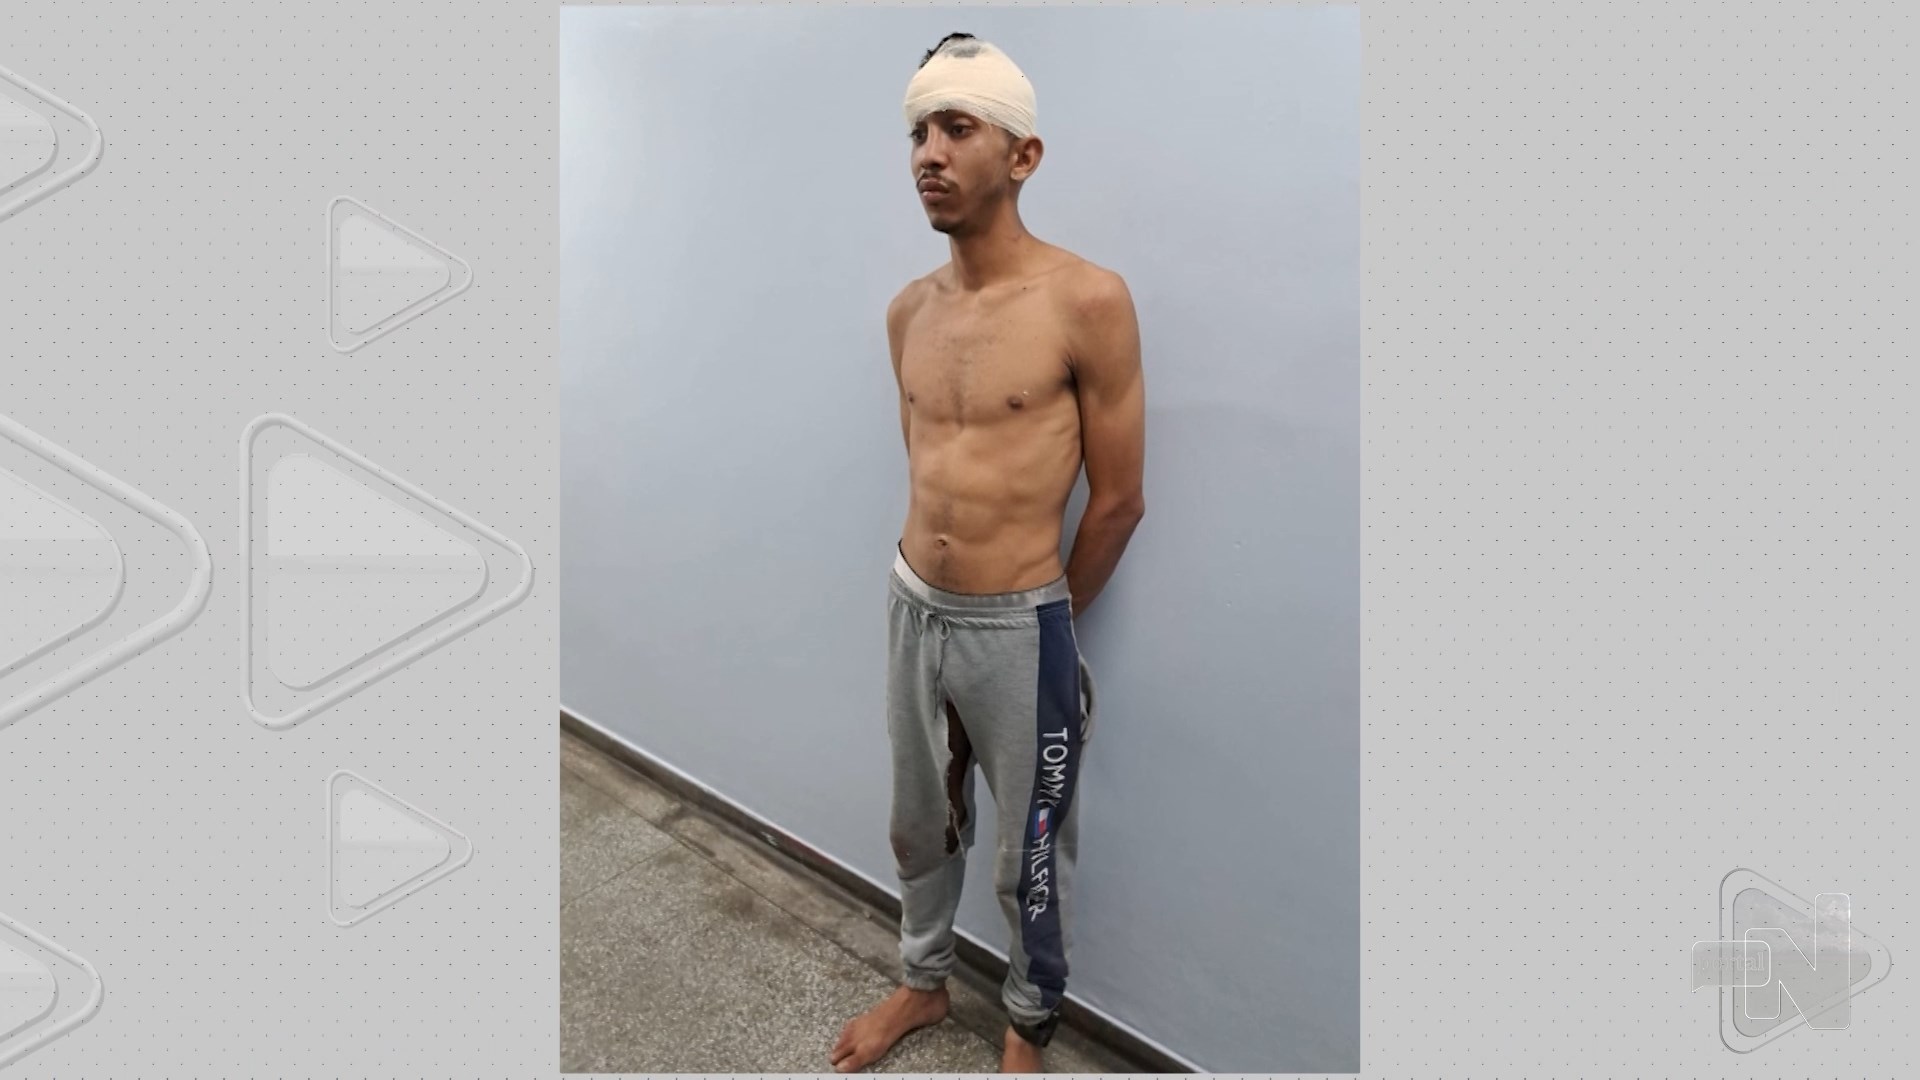 Adolescente reage a assalto e luta com suspeitos na Zona Norte de Manaus